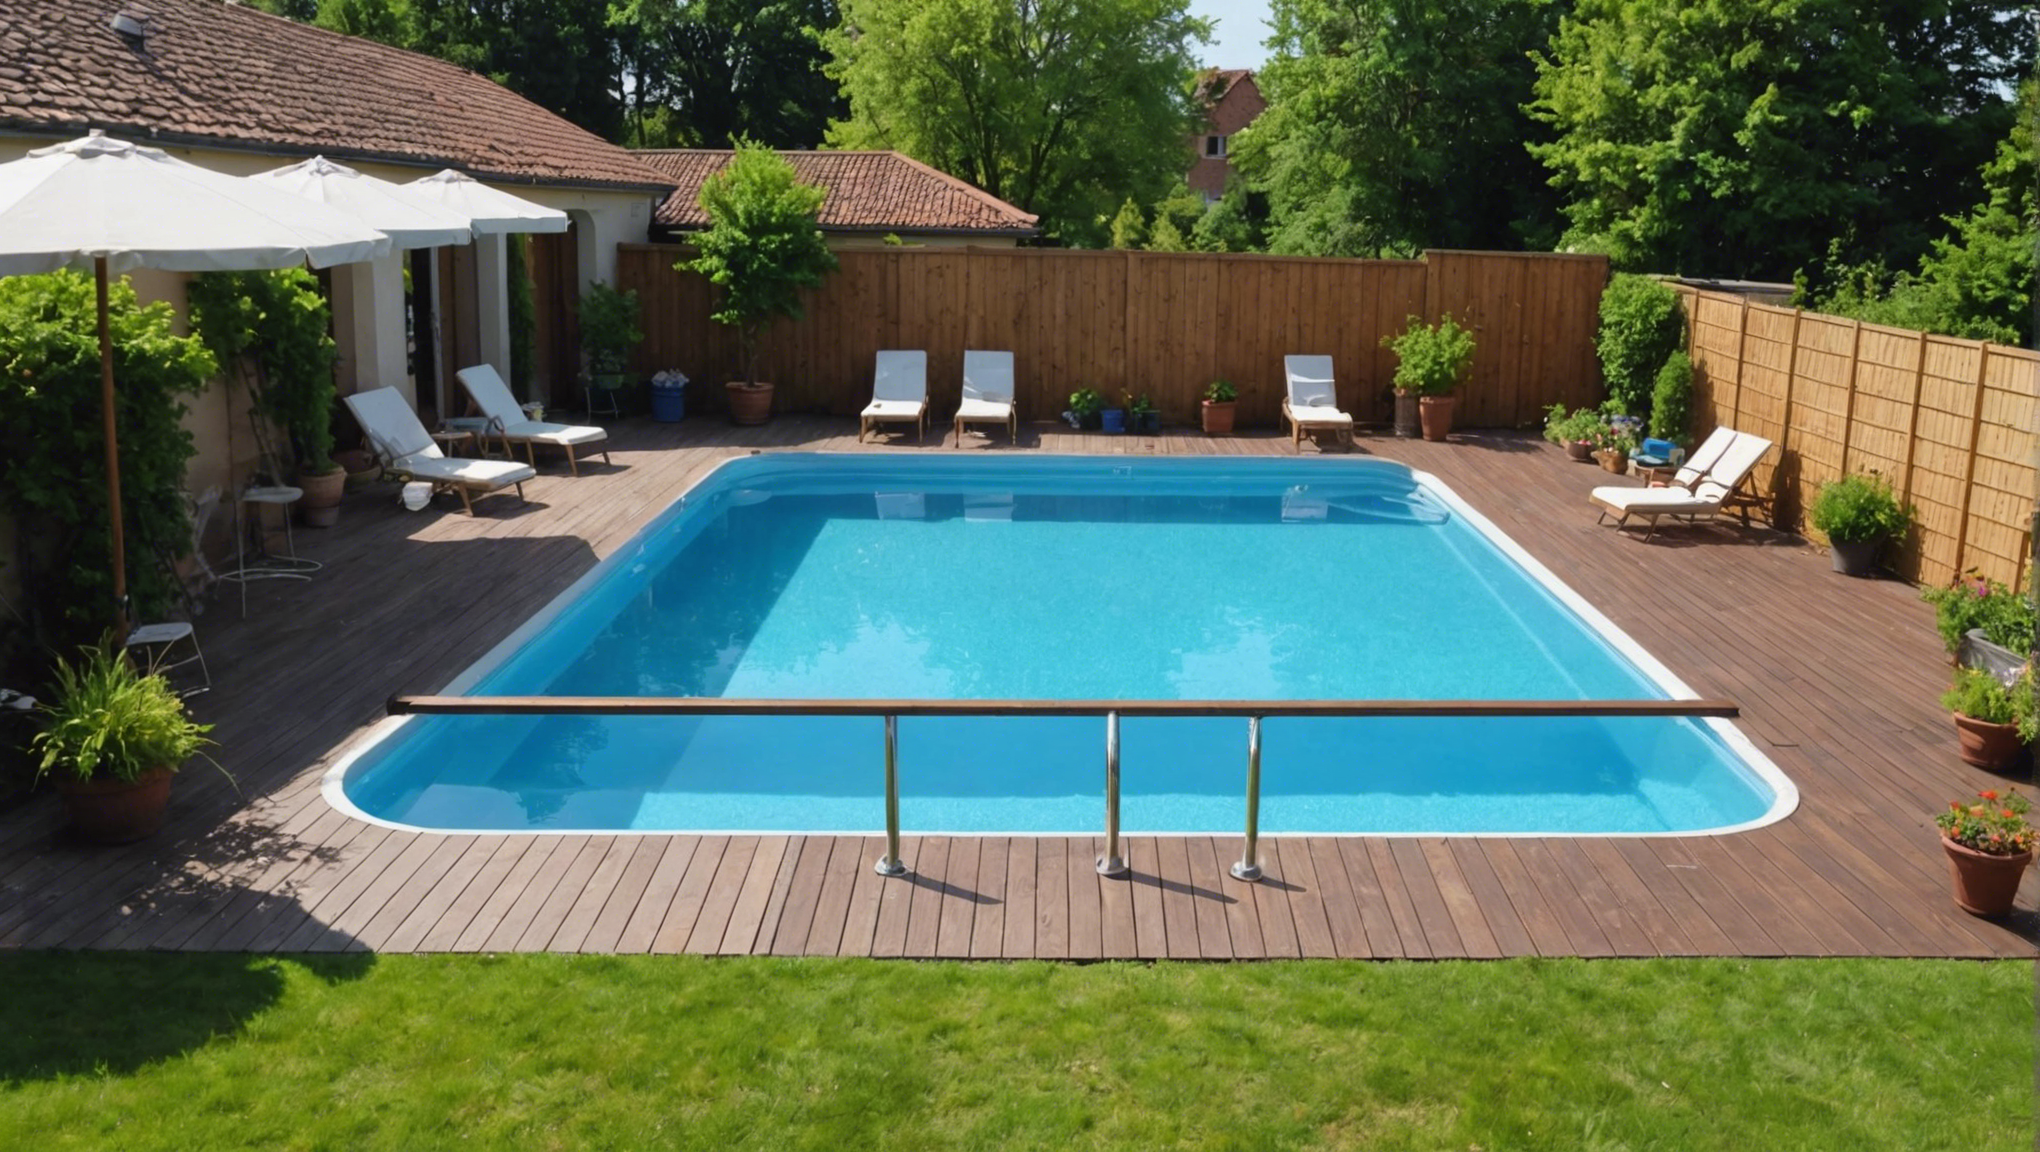 découvrez nos conseils pour choisir les meilleurs matériaux de terrassement pour l'installation d'une piscine coque dans votre jardin. optez pour la qualité et la durabilité pour un projet réussi.